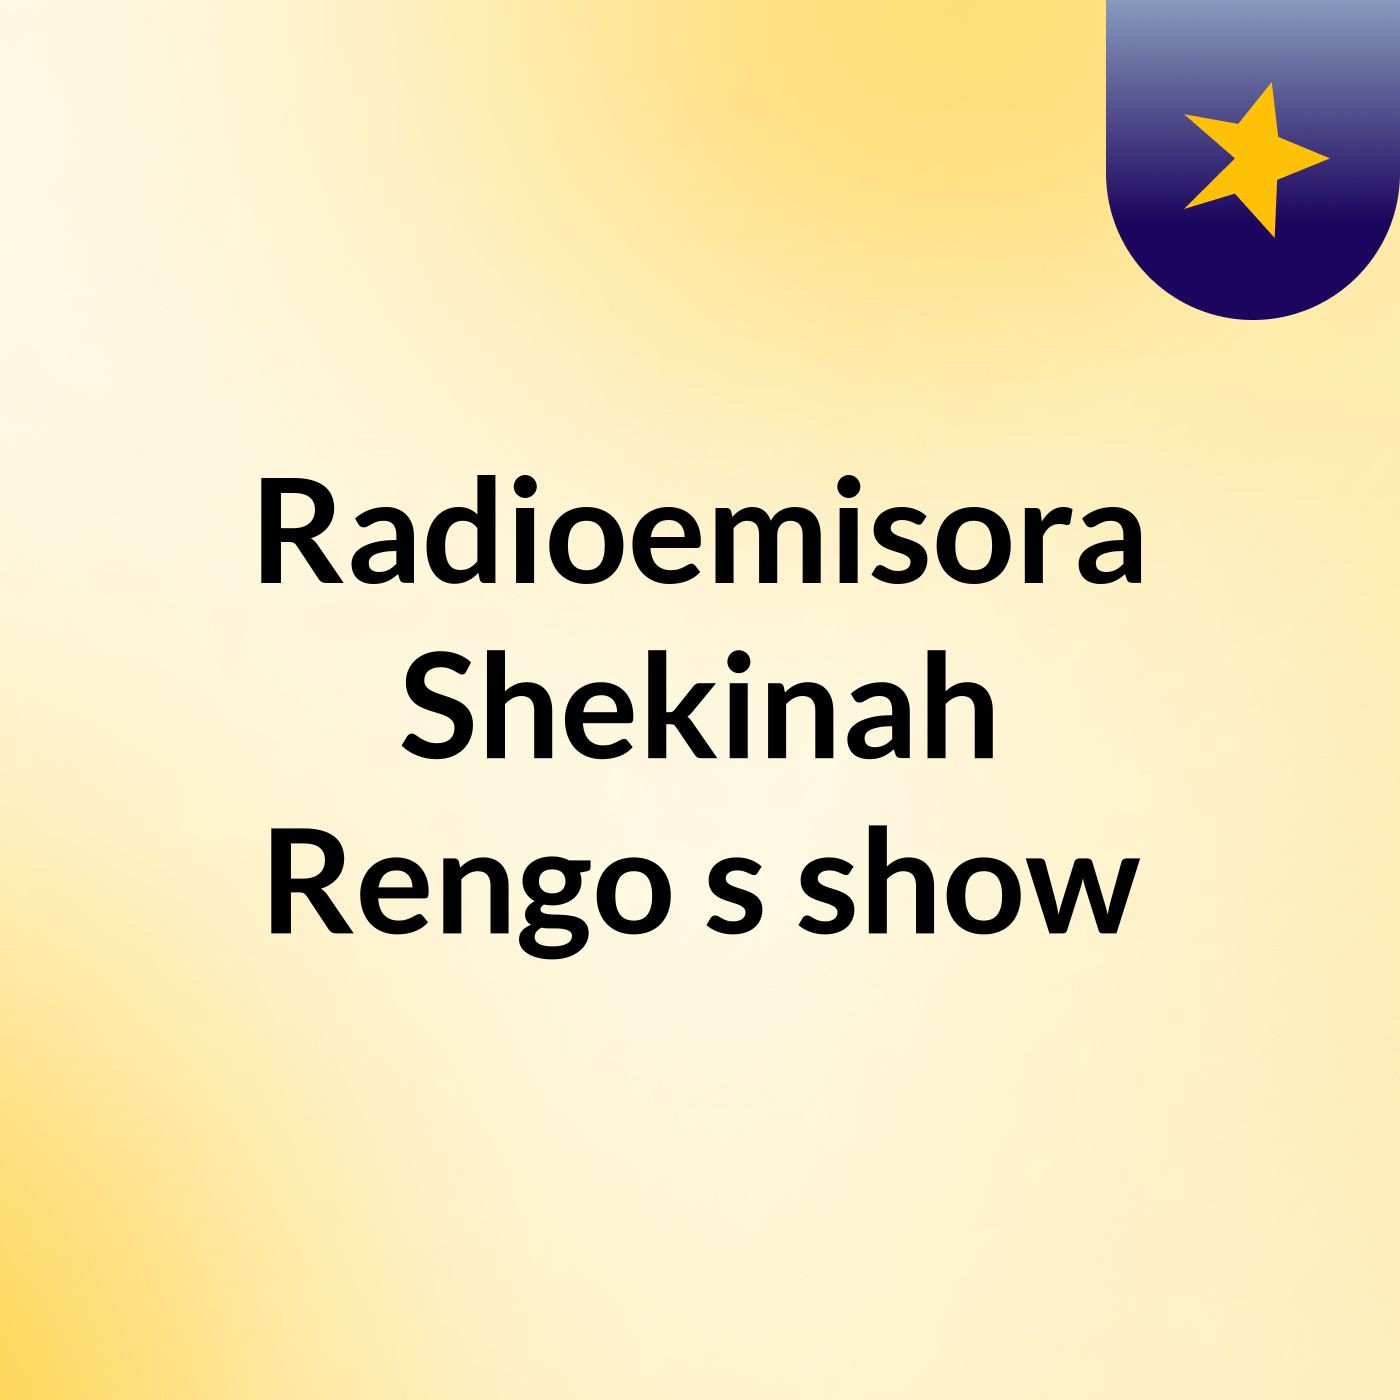 Radioemisora Shekinah Rengo's show